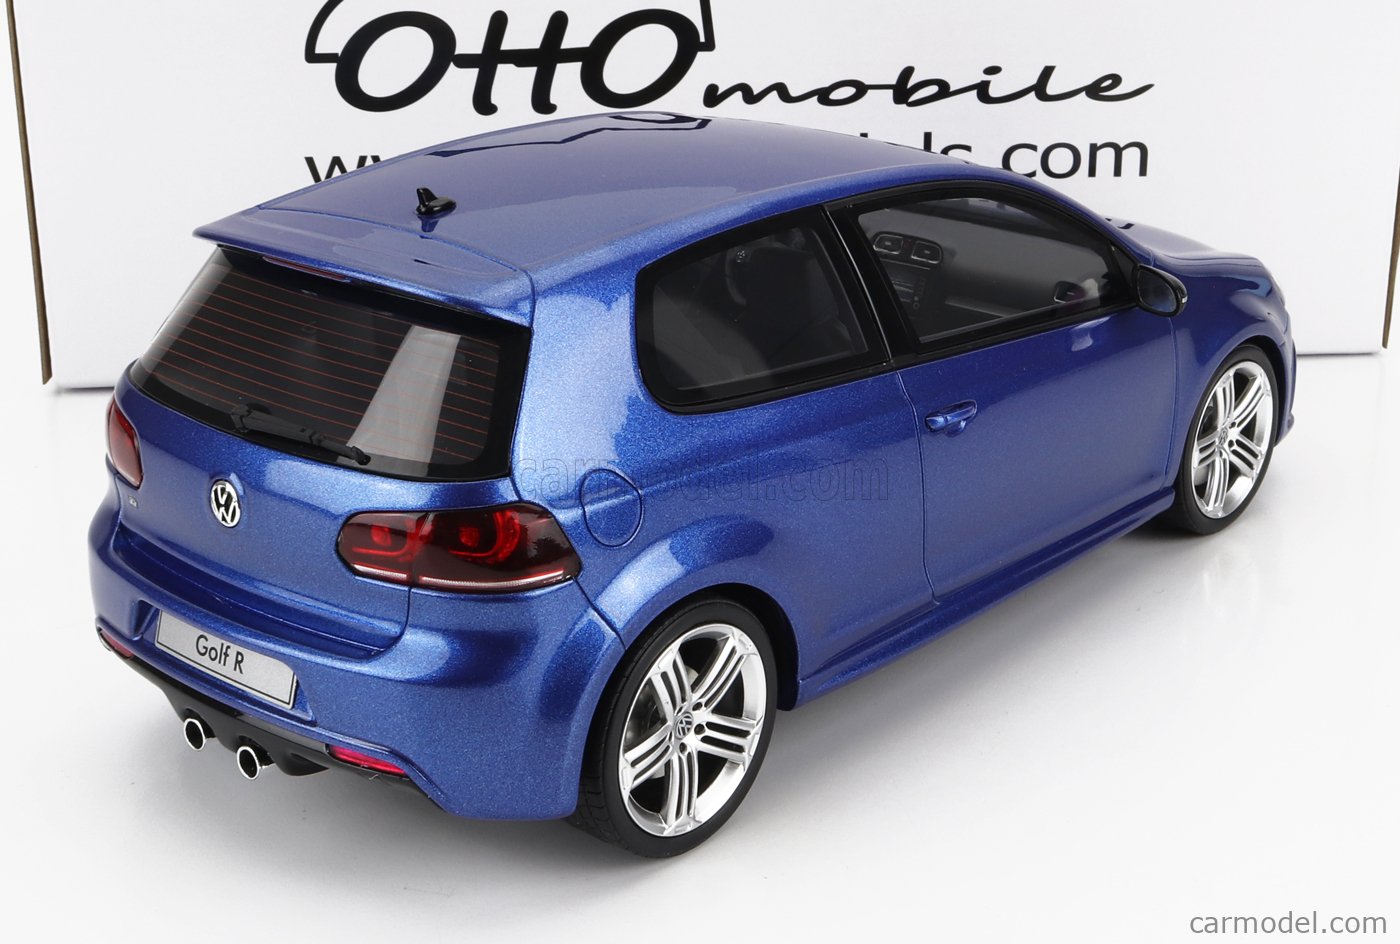 Modellauto Volkswagen Golf VI R 2010 Rising Blue OttO mobile 1:18